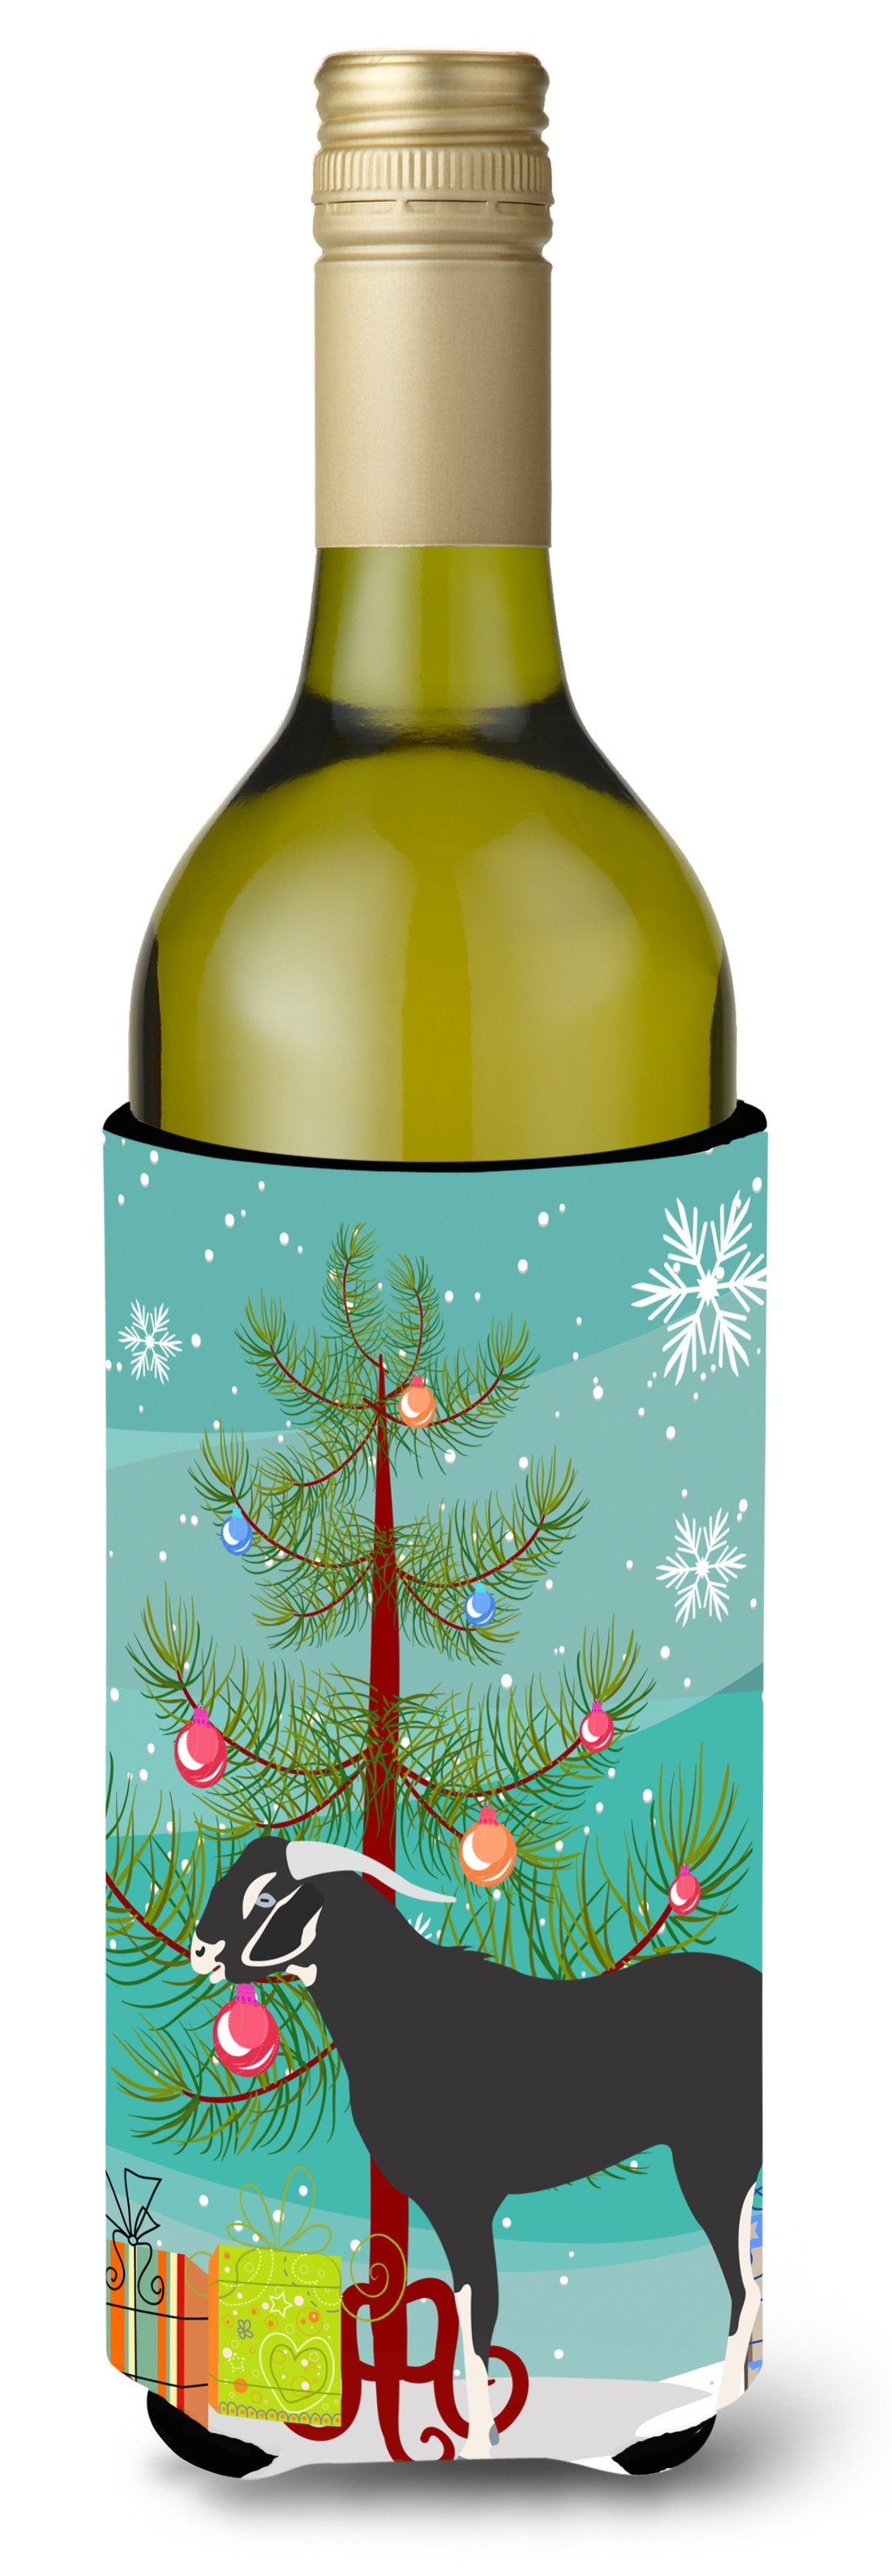 Black Bengal Goat Christmas Wine Bottle Beverge Insulator Hugger BB9251LITERK by Caroline's Treasures